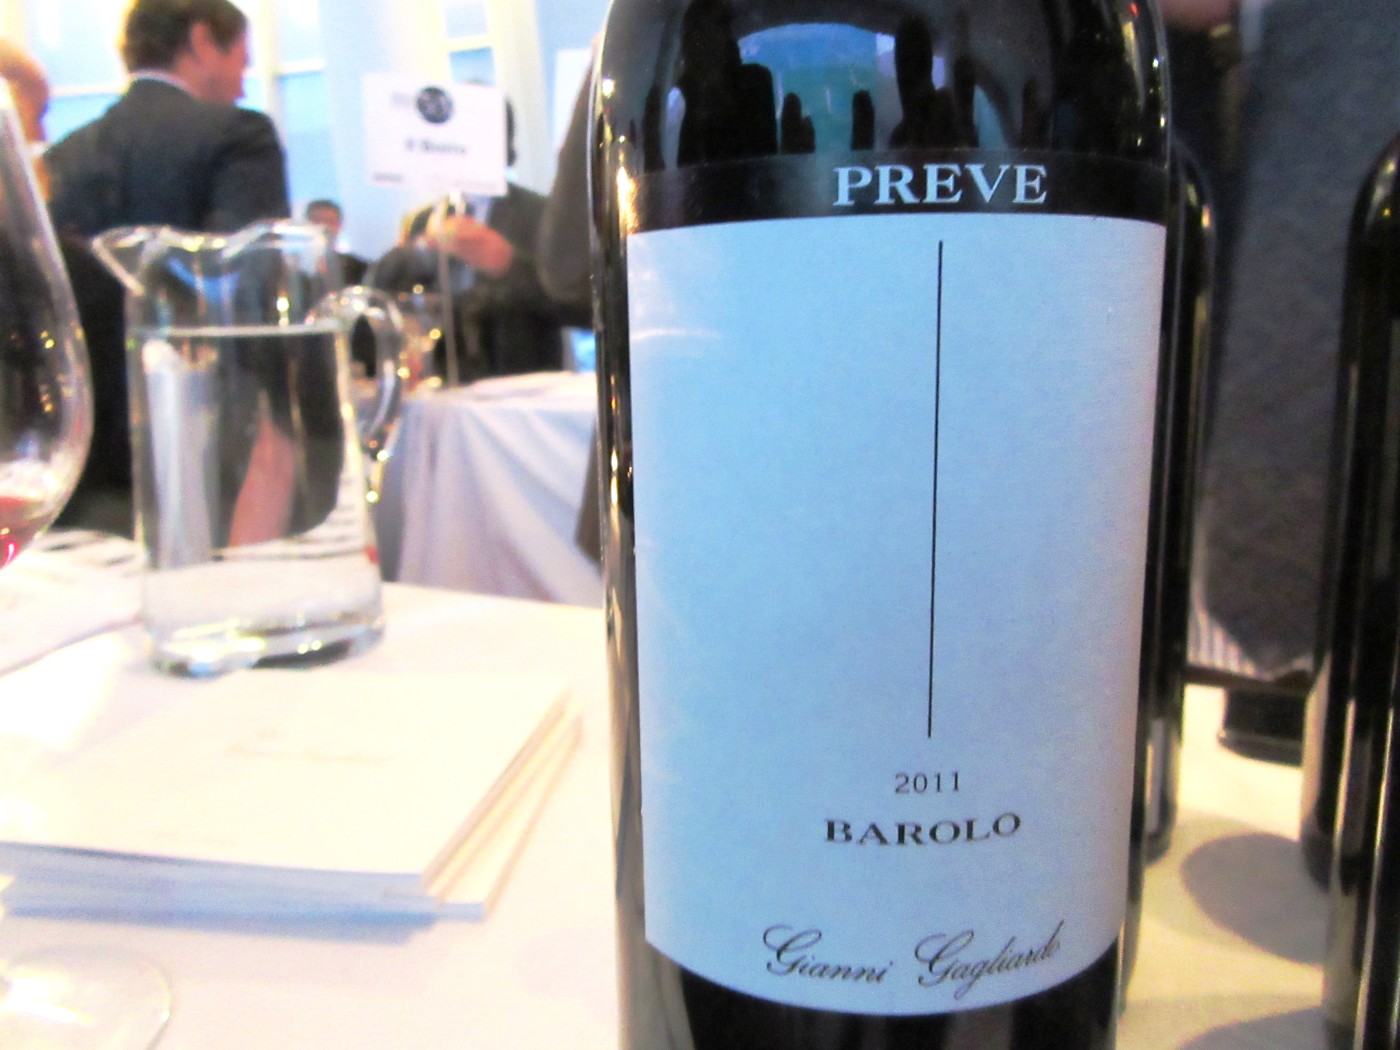 Gianni Gagliardro, Barolo Preve 2011, Piedmont, Italy, Wine Casual